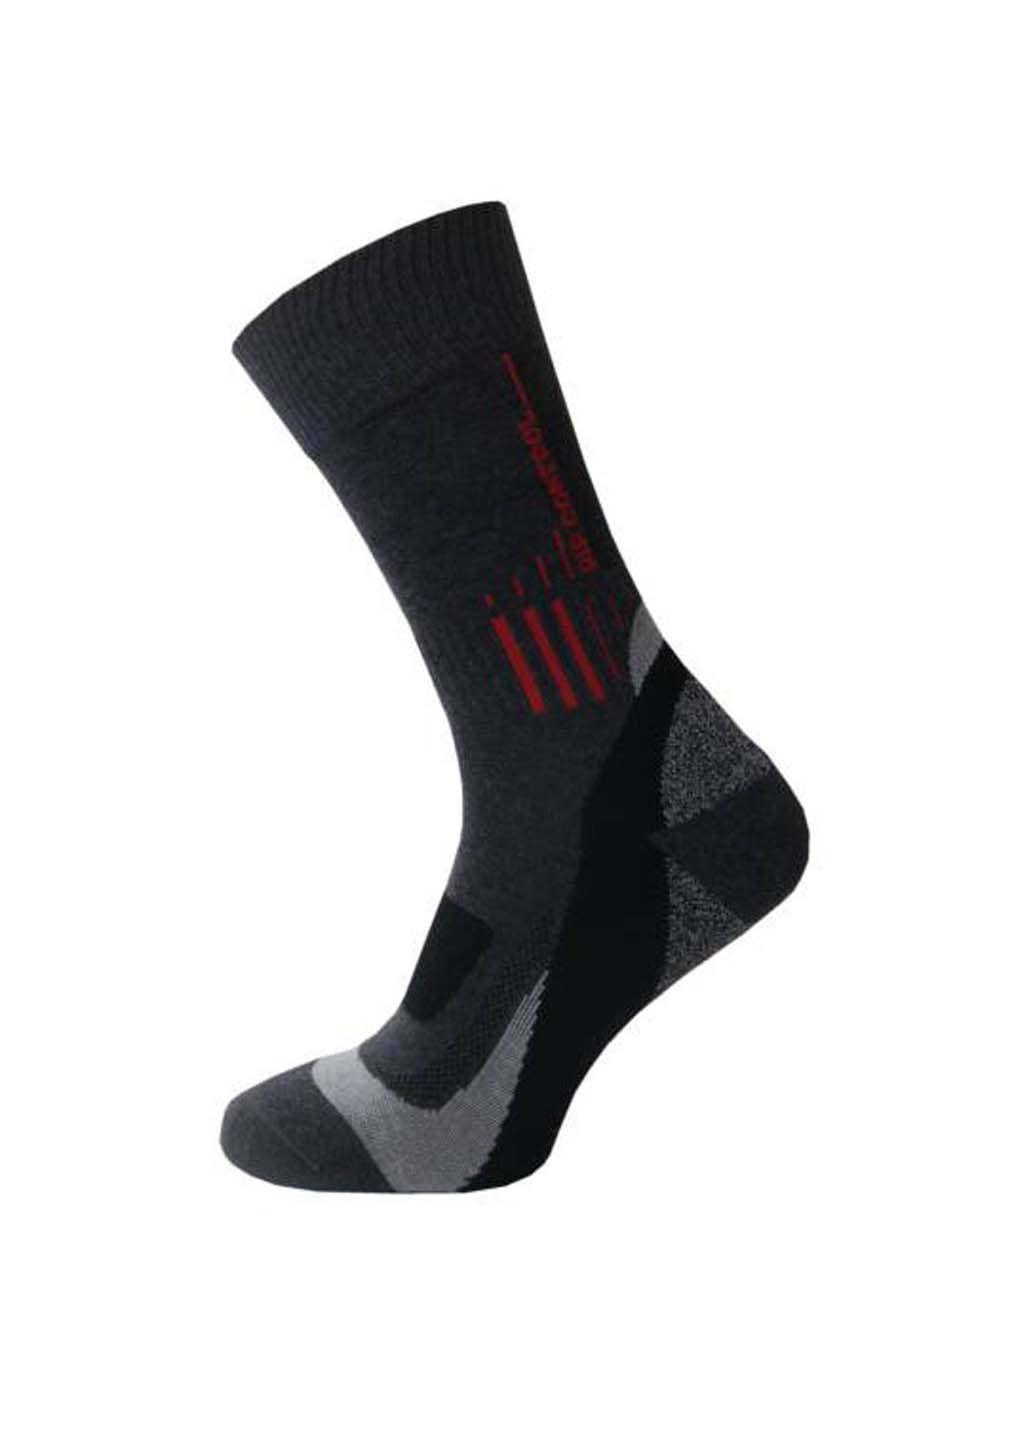 Спортивні шкарпетки Trekking Basic Sesto Senso темно-сірі спортивні